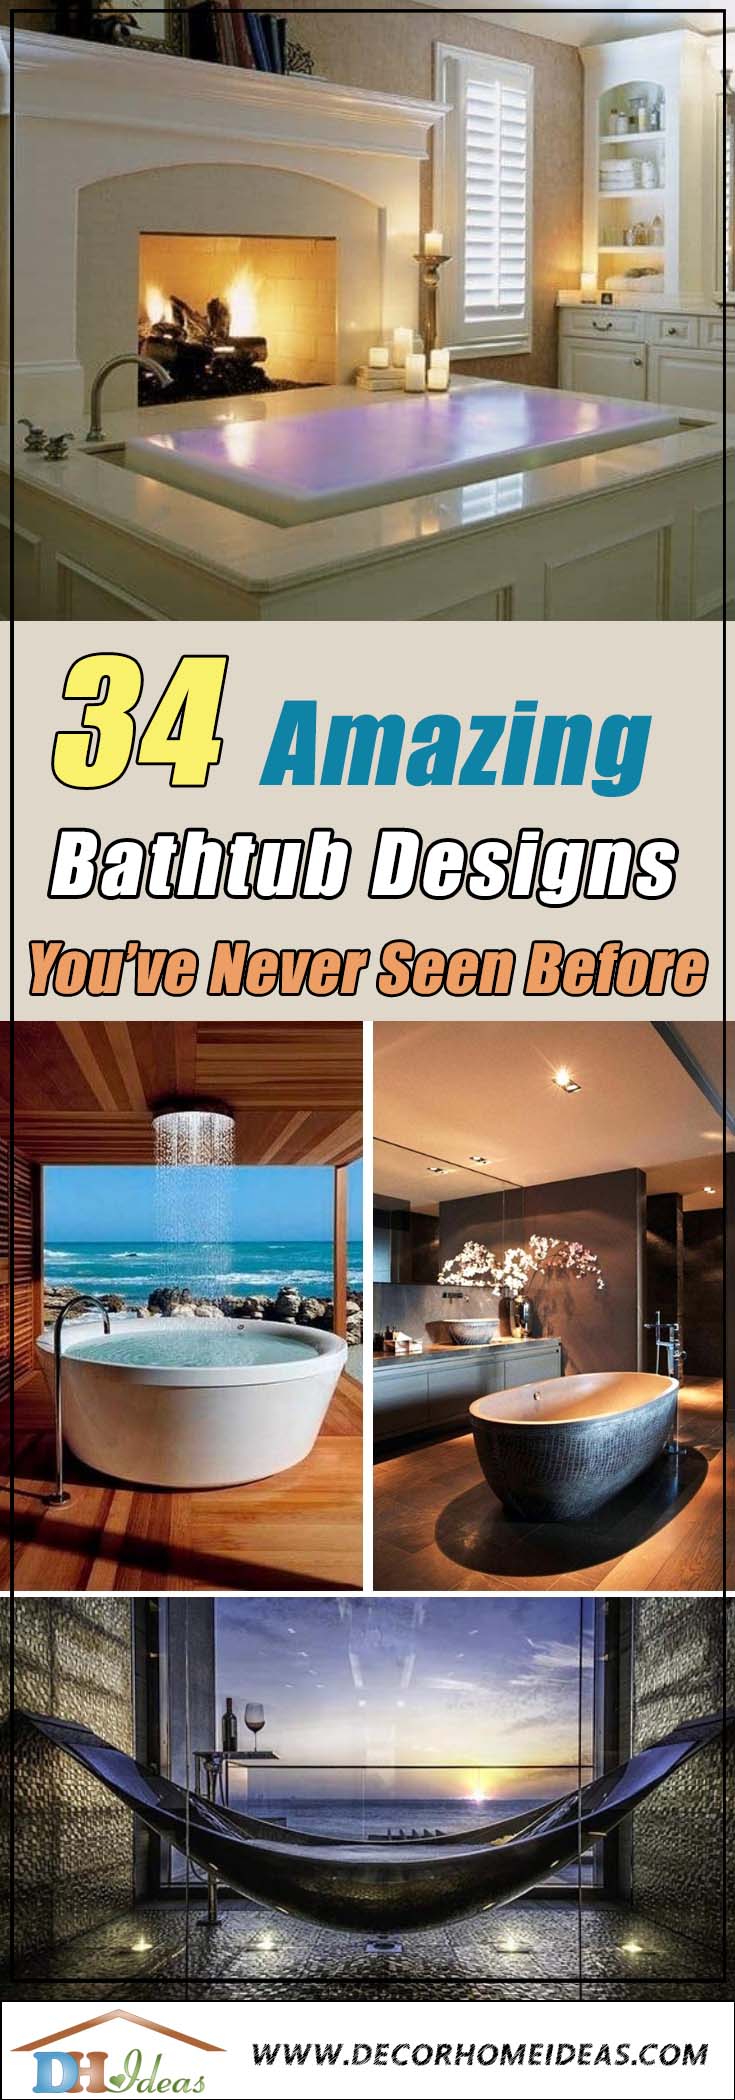 Cool Bathtub Ideas #bathtub #tub #cooltub #bathroom #decorhomeideas